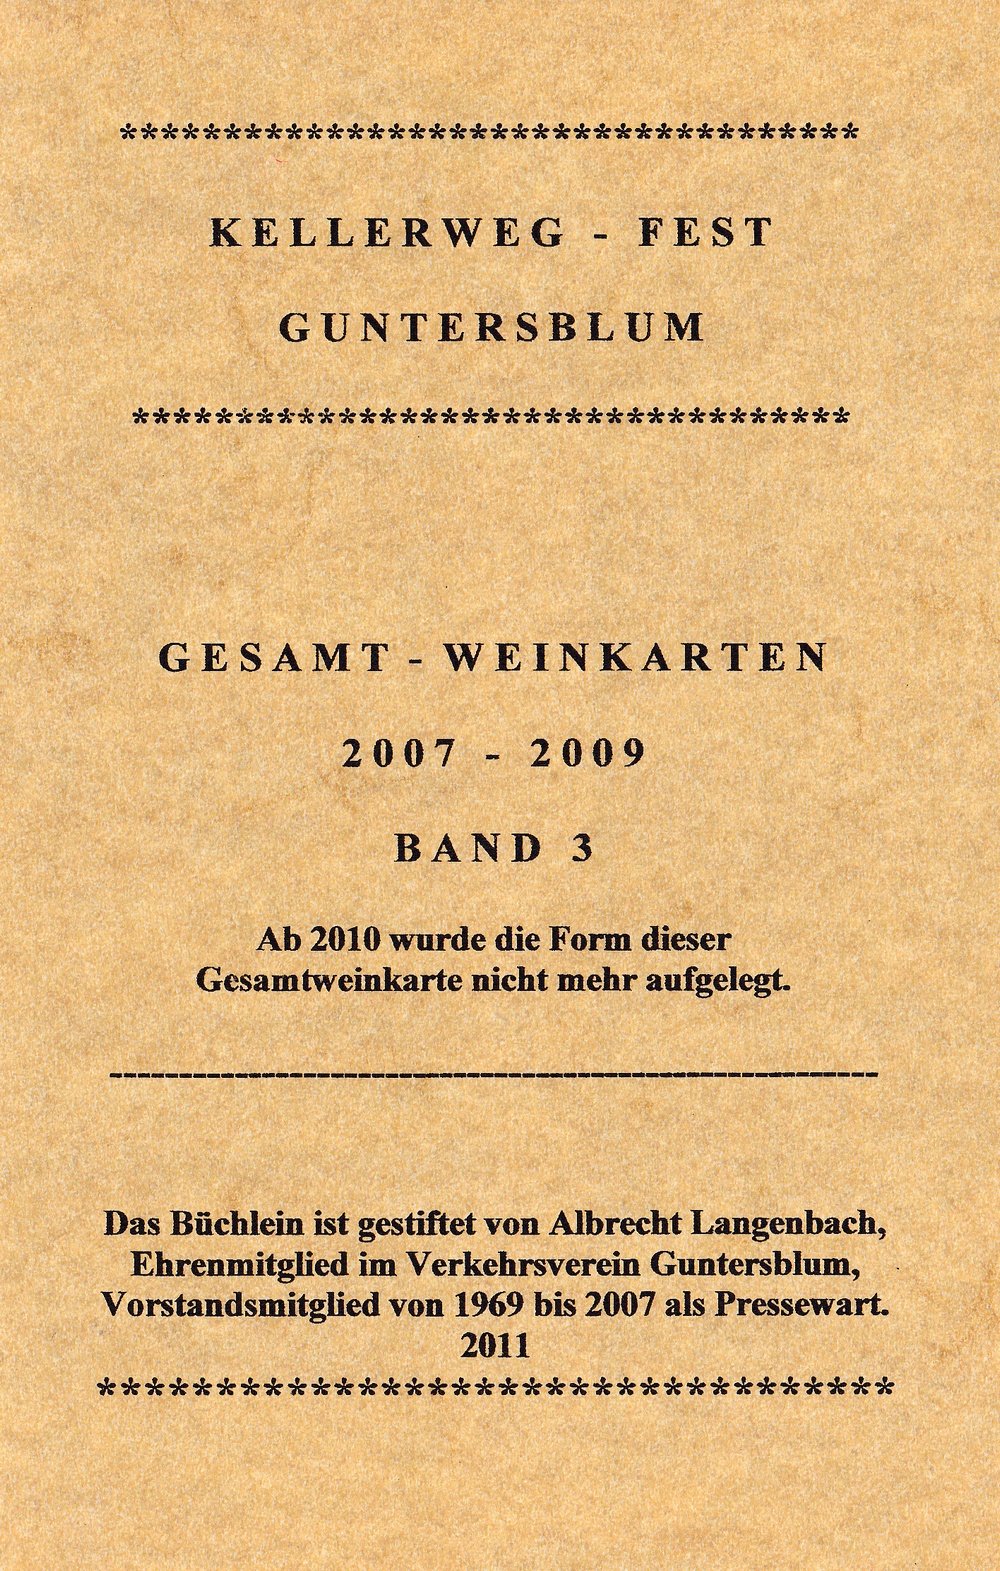 Guntersblumer Kellerweg-Fest Gesamt-Weinkarten 2007-2009 (Kulturverein Guntersblum CC BY-NC-SA)